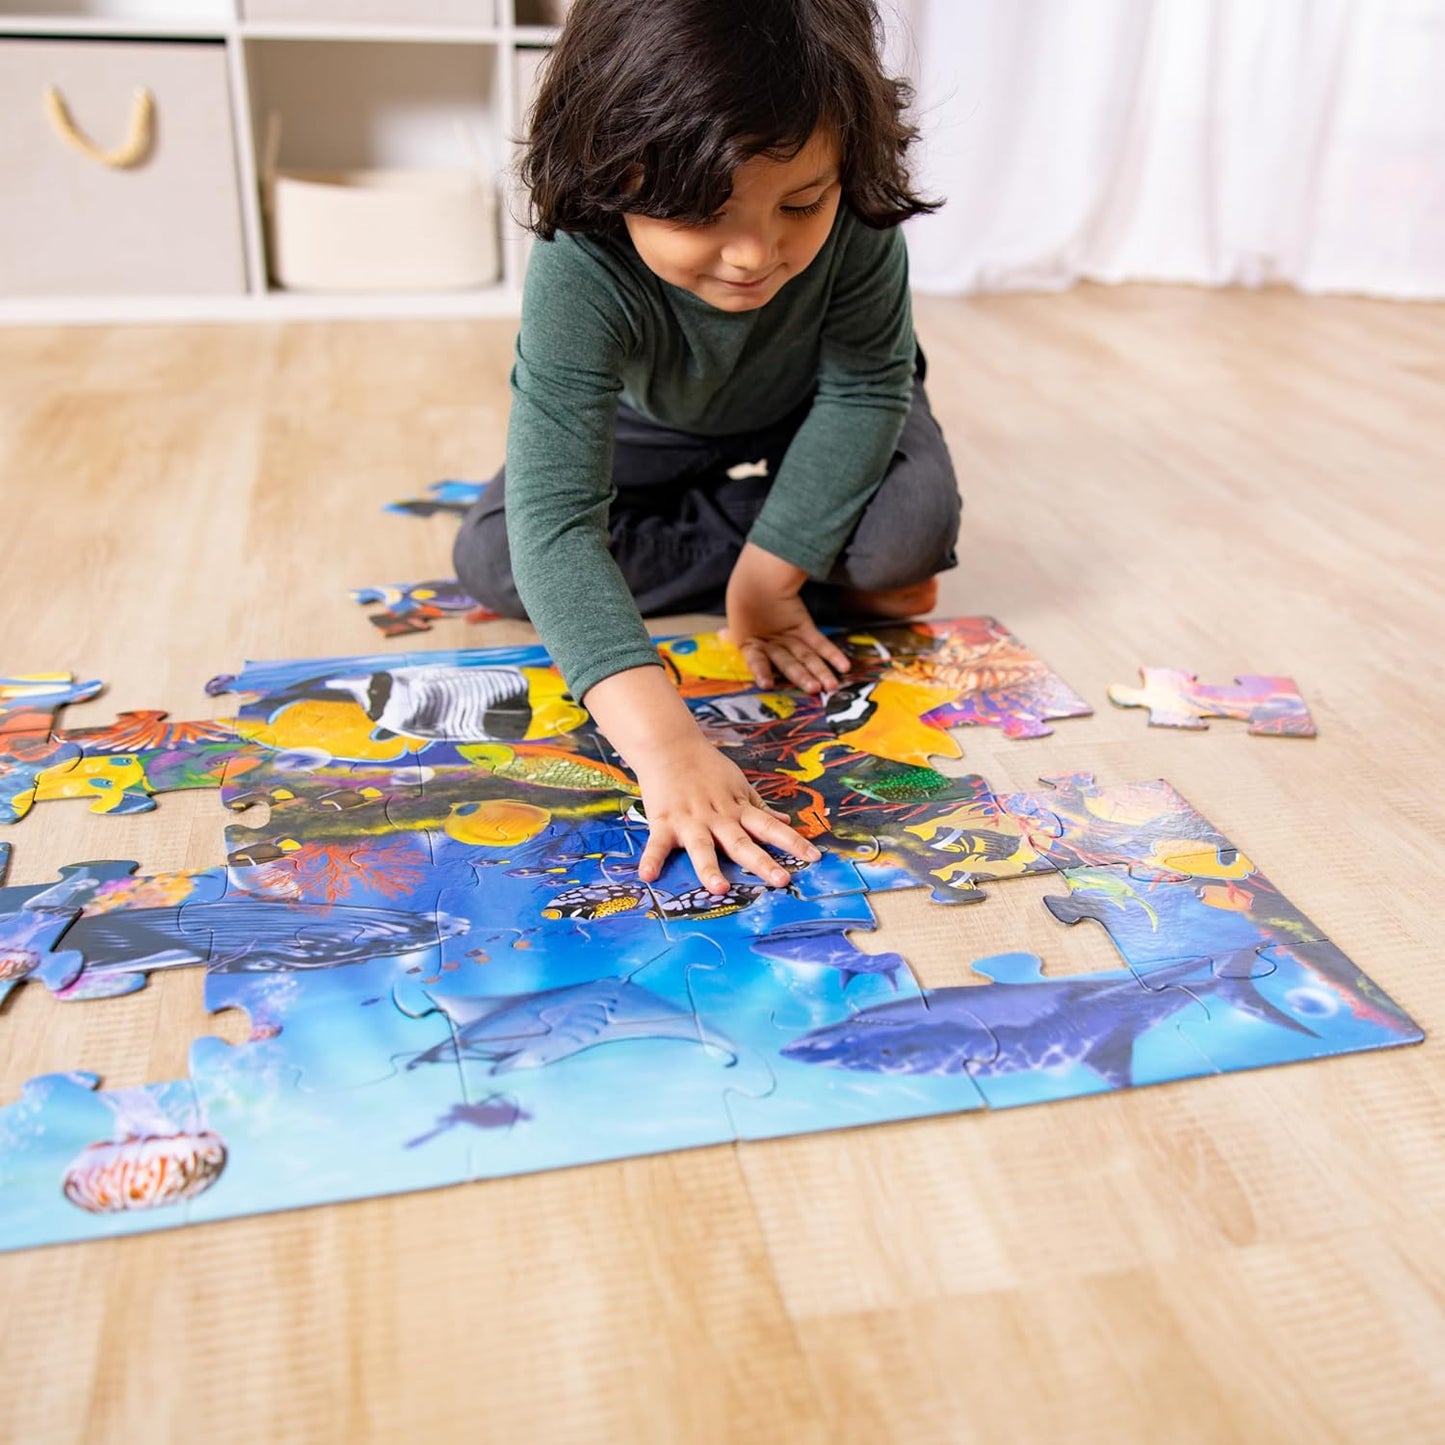 Melissa & Doug Underwater Ocean Floor Puzzle (48 Pcs, 2 X 3 Feet) Toddler Floor Puzzle, Ocean Animals Puzzle for Kids 3+ - Fsc-Certified Materials